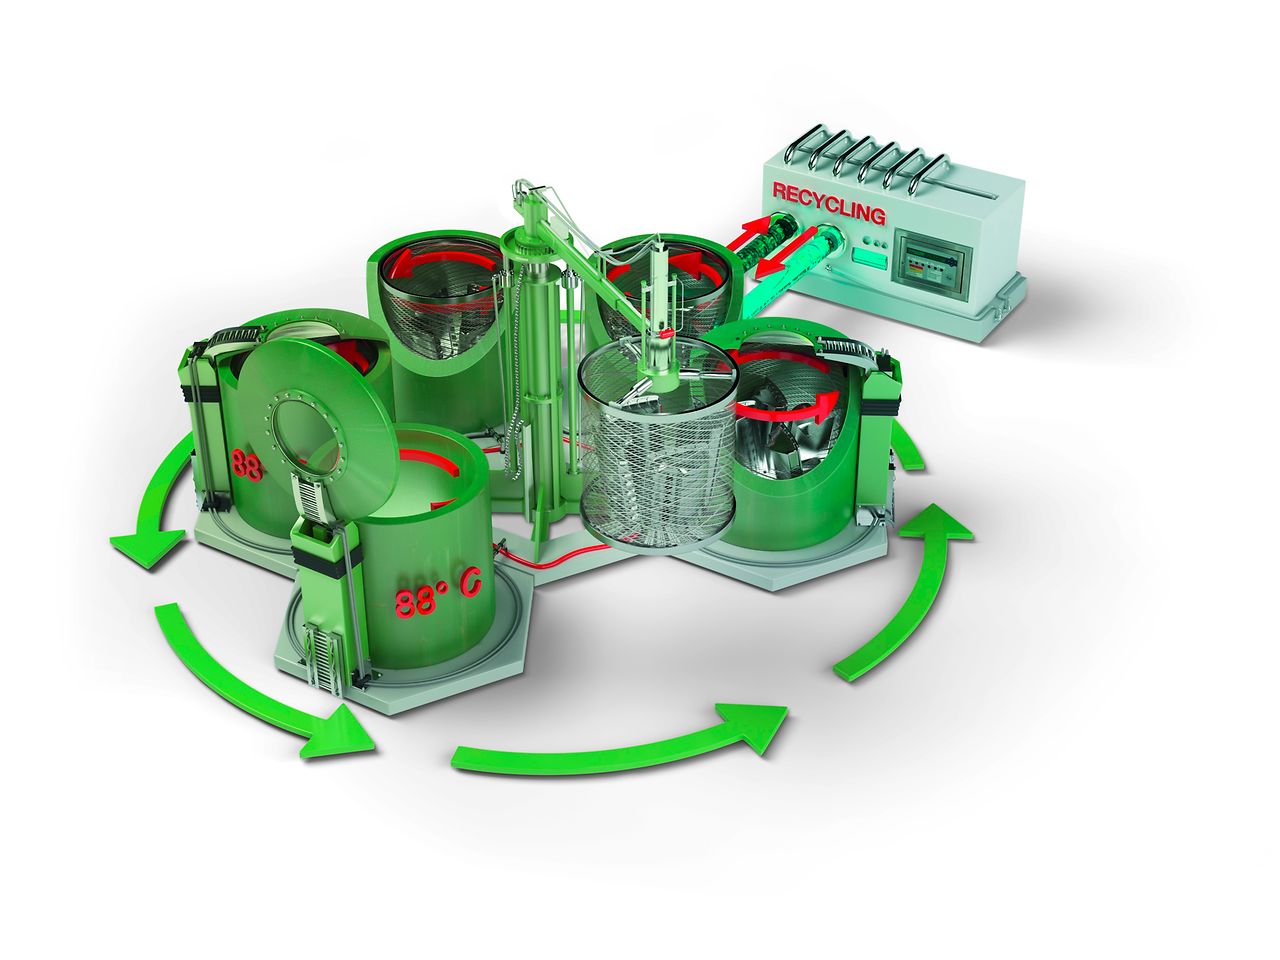  Mit den vollautomatischen Loctite Imprägnierverfahren mit Recyclingsystem können sämtliche Porositäten in Metallbauteilen abgedichtet werden.